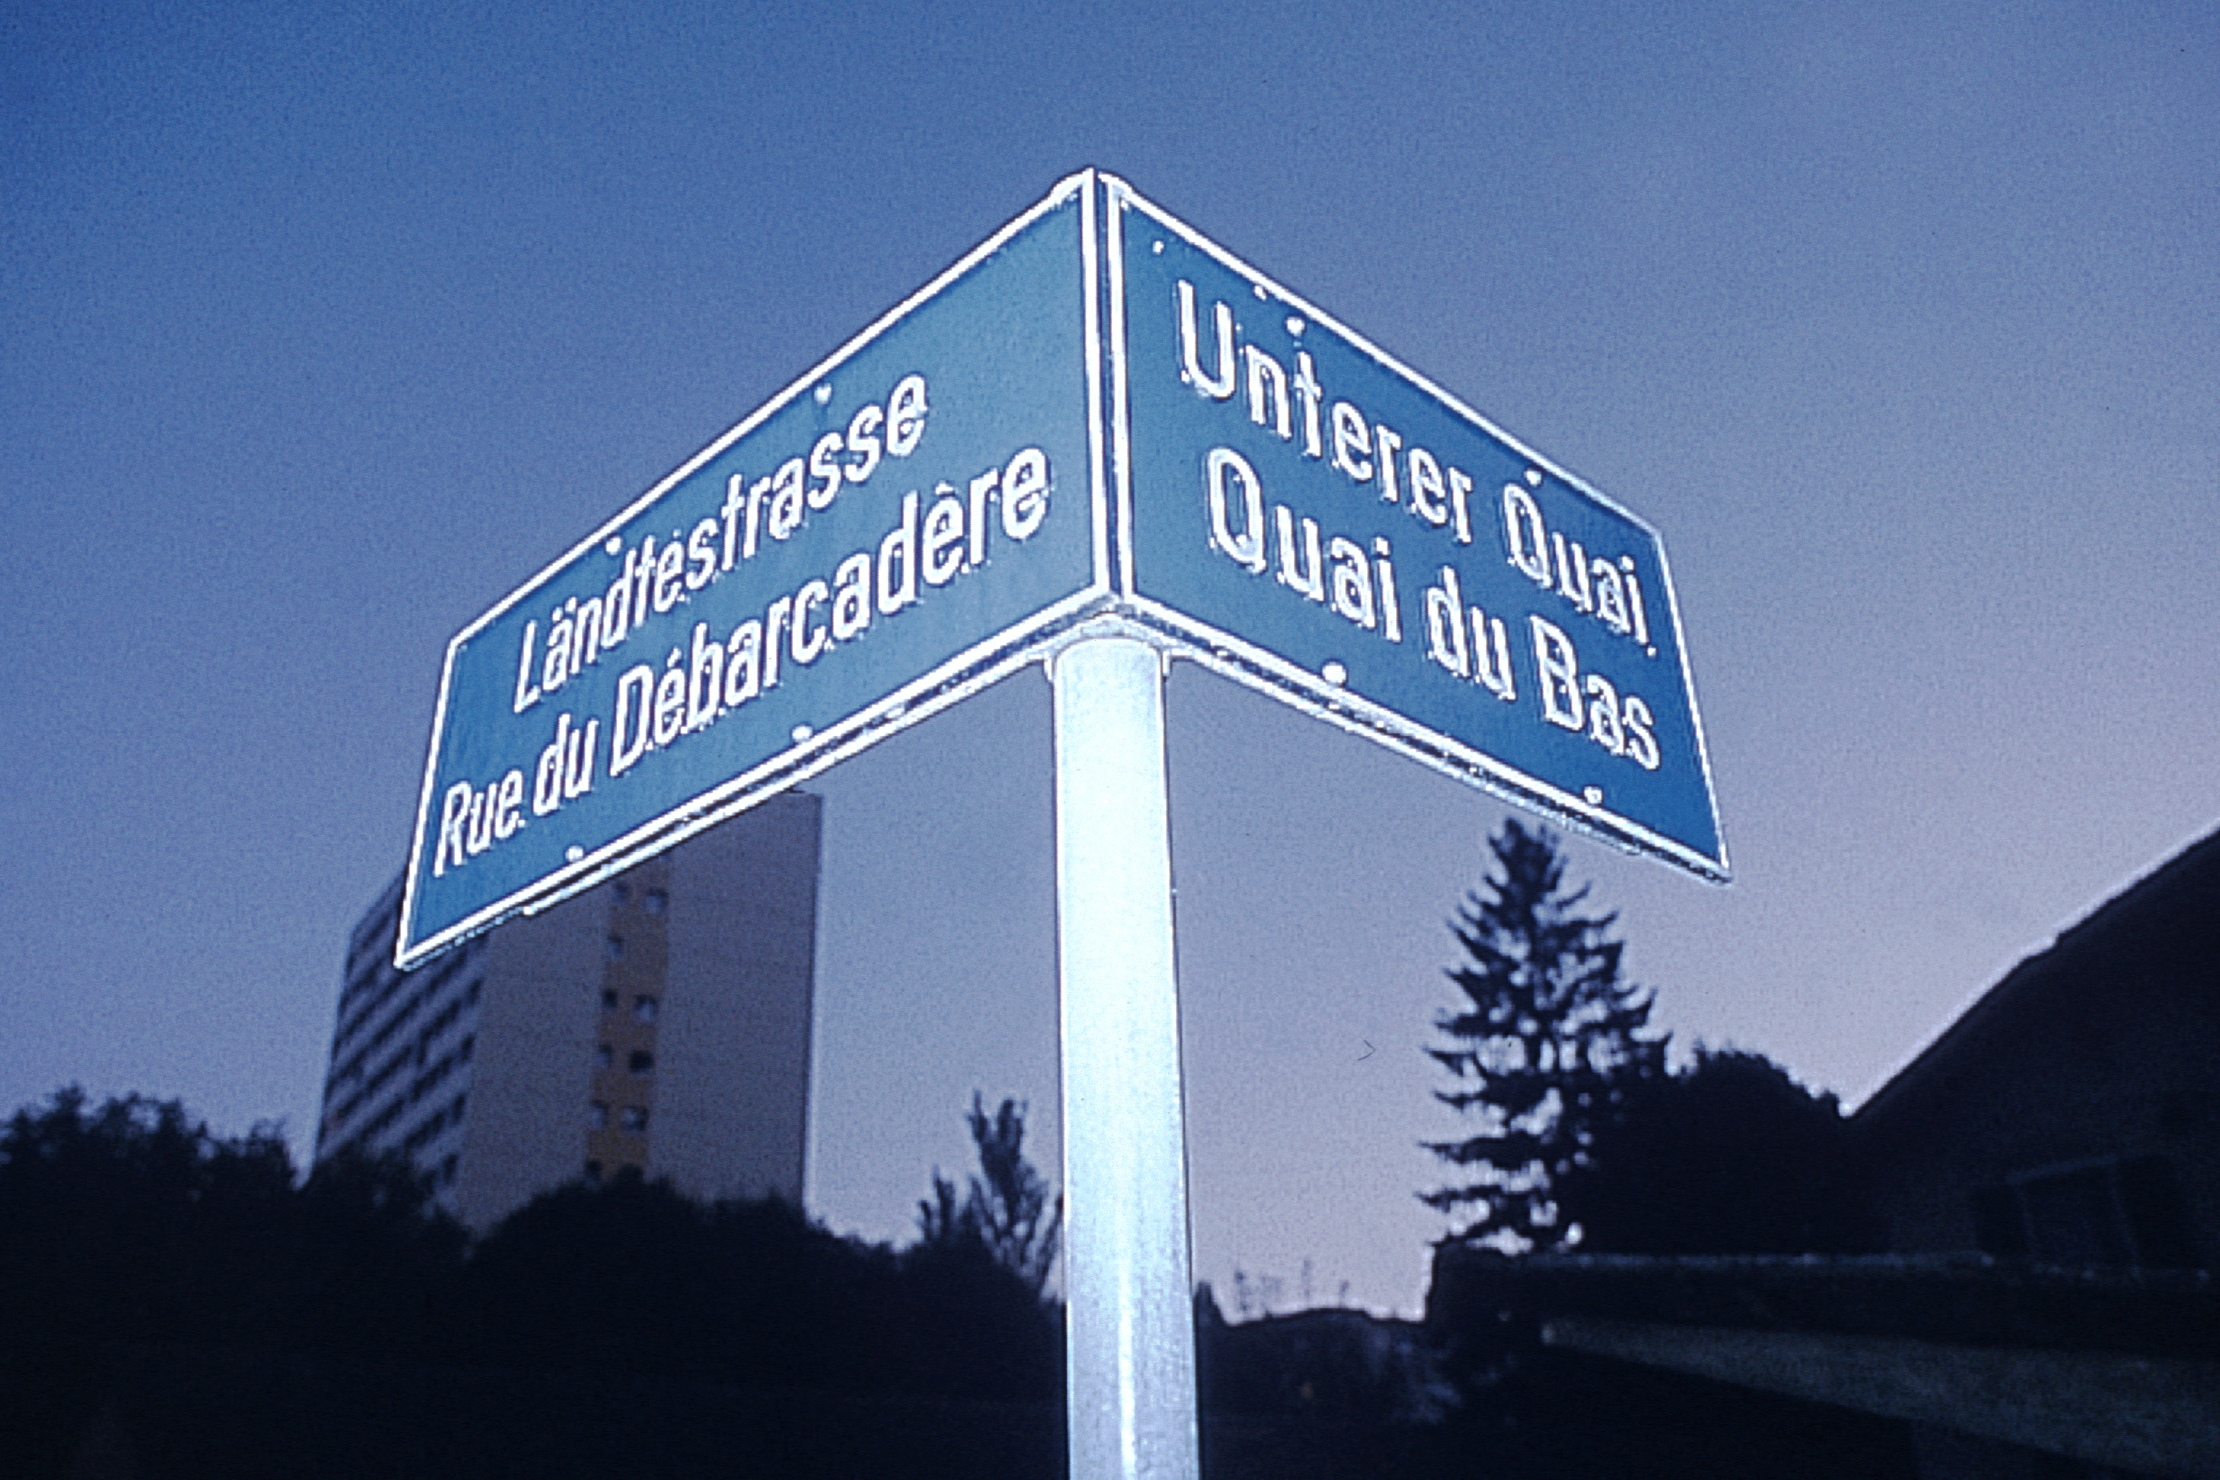 Bilinguitad – Bienna, la citad bilingua la pli gronda da la Svizra © Chambre économique Biel/Bienne Seeland